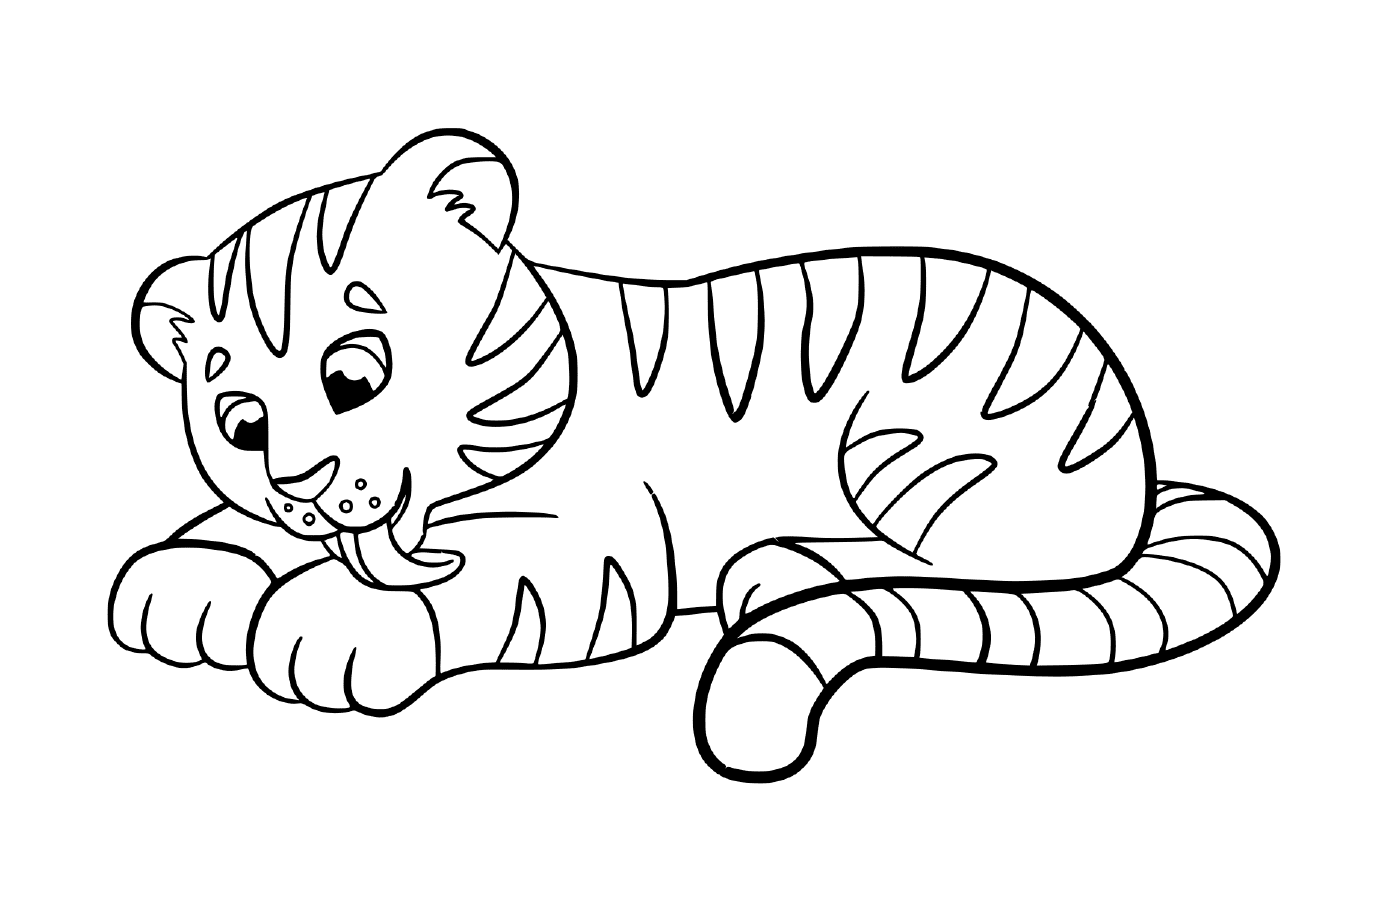  A cute and kawaii tiger baby 